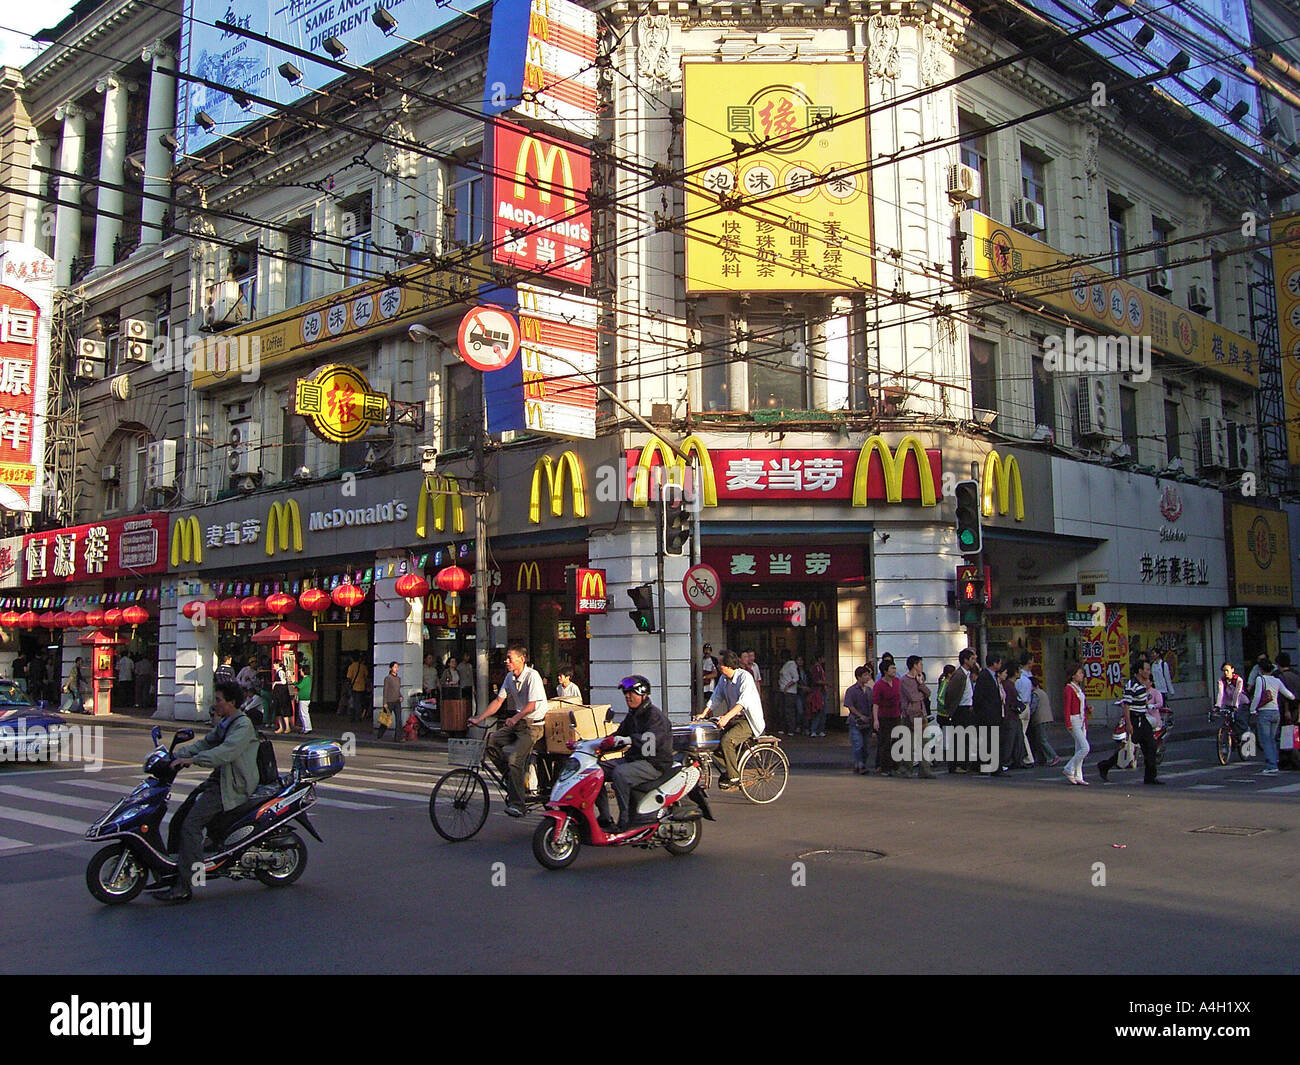 McDonalds restaurant, Nanjing Road, Shanghai, China Stock Photo